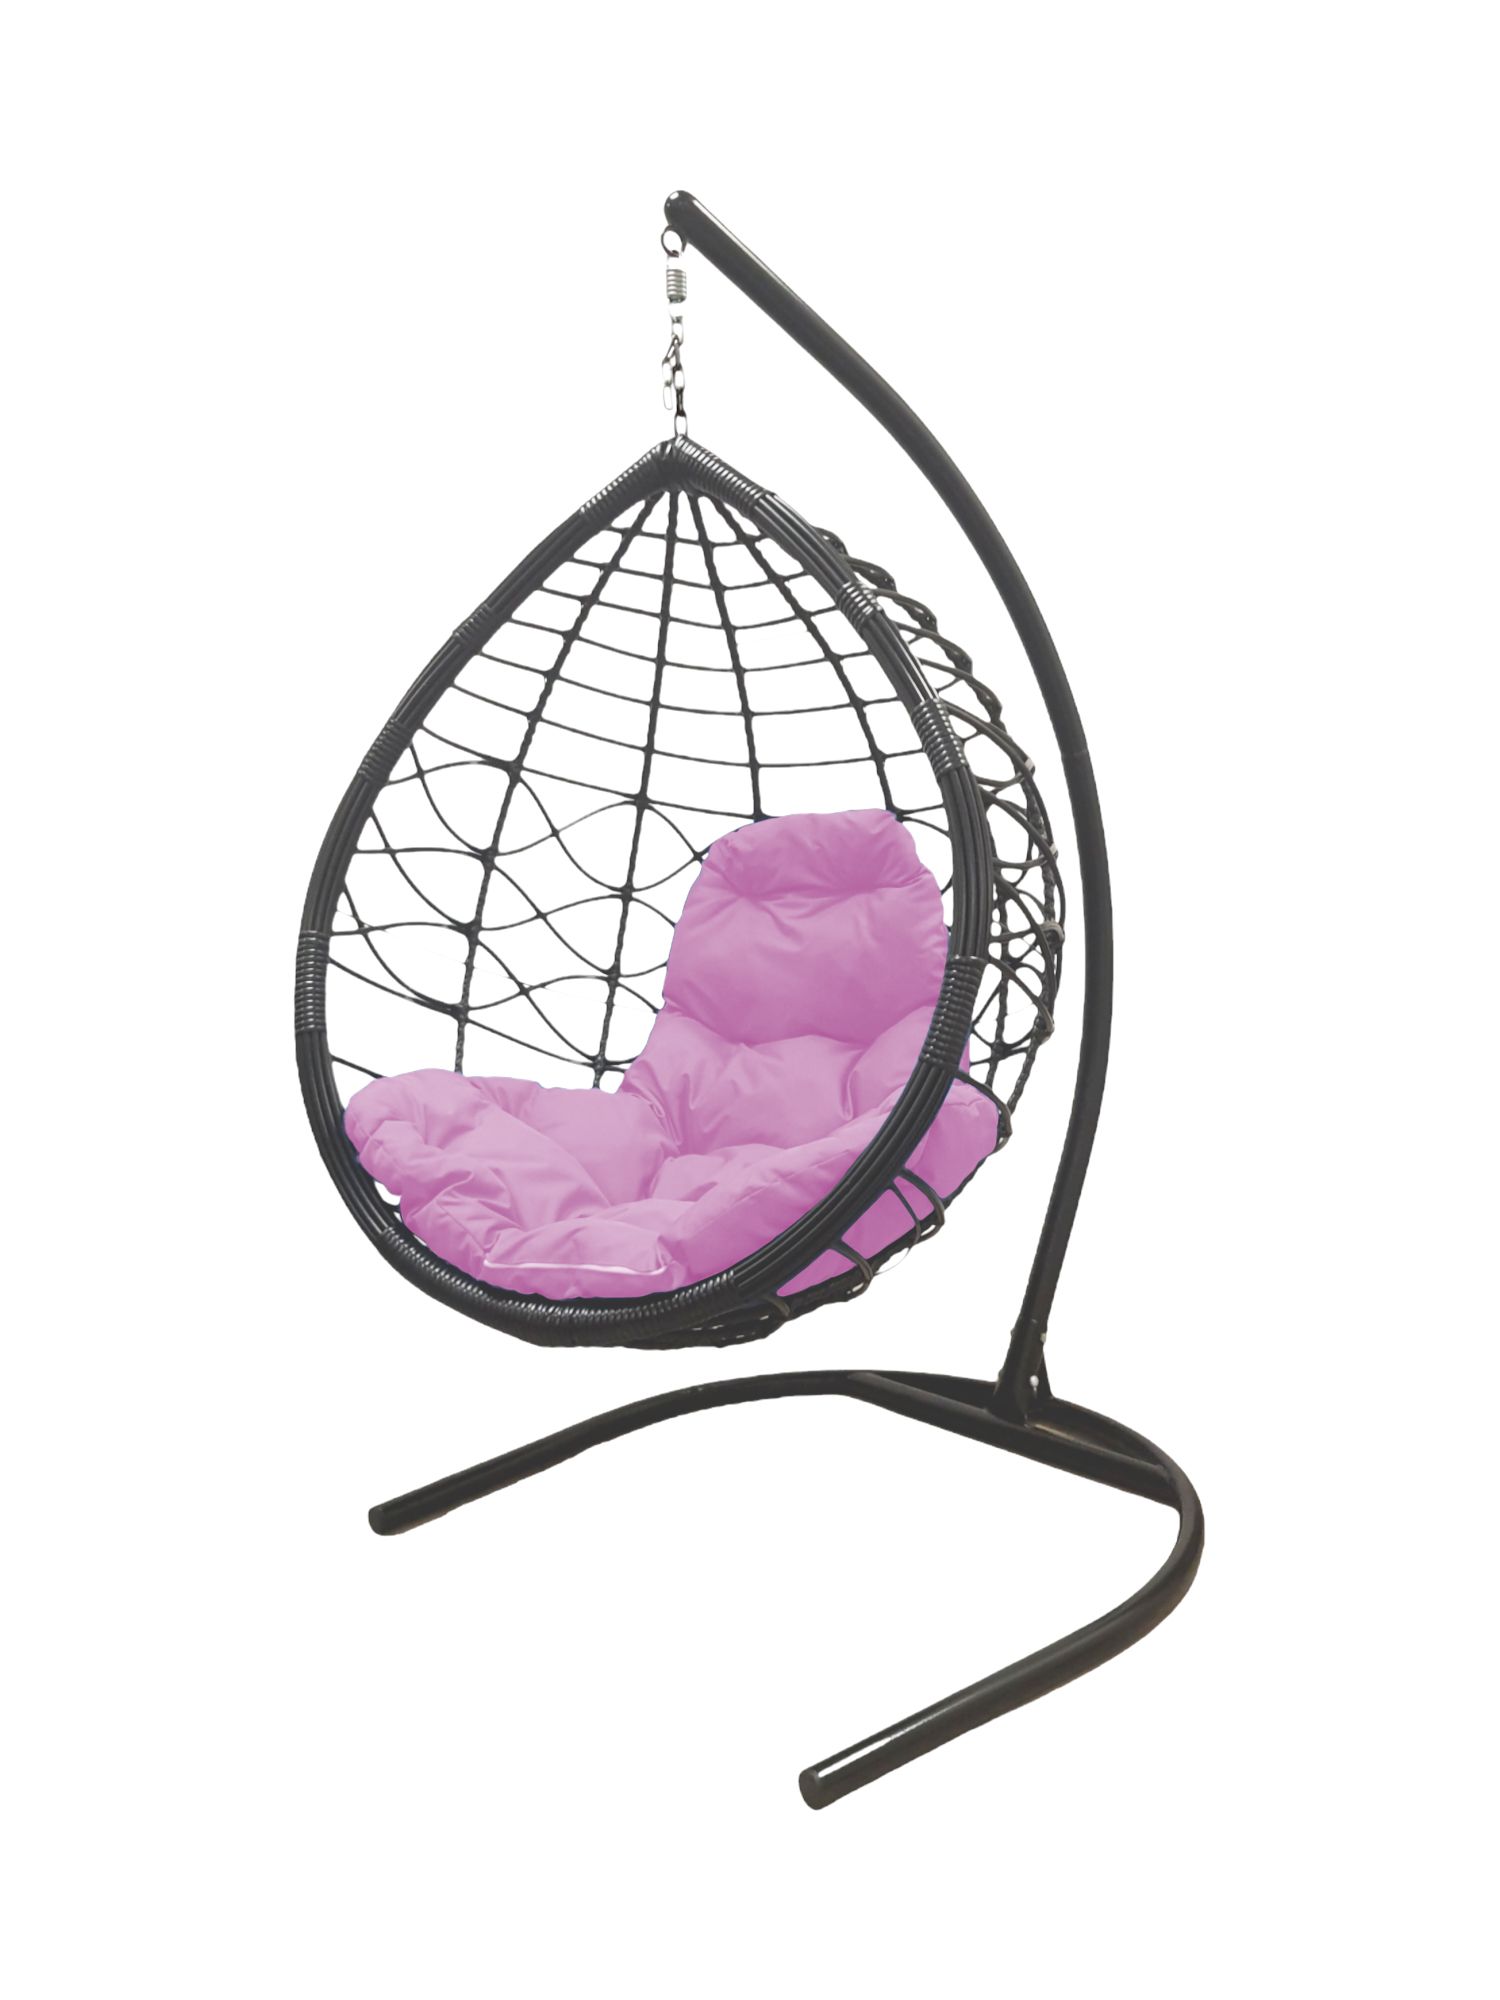 Подвесное кресло серое, Элит, ротанг 23071950 розовая подушка